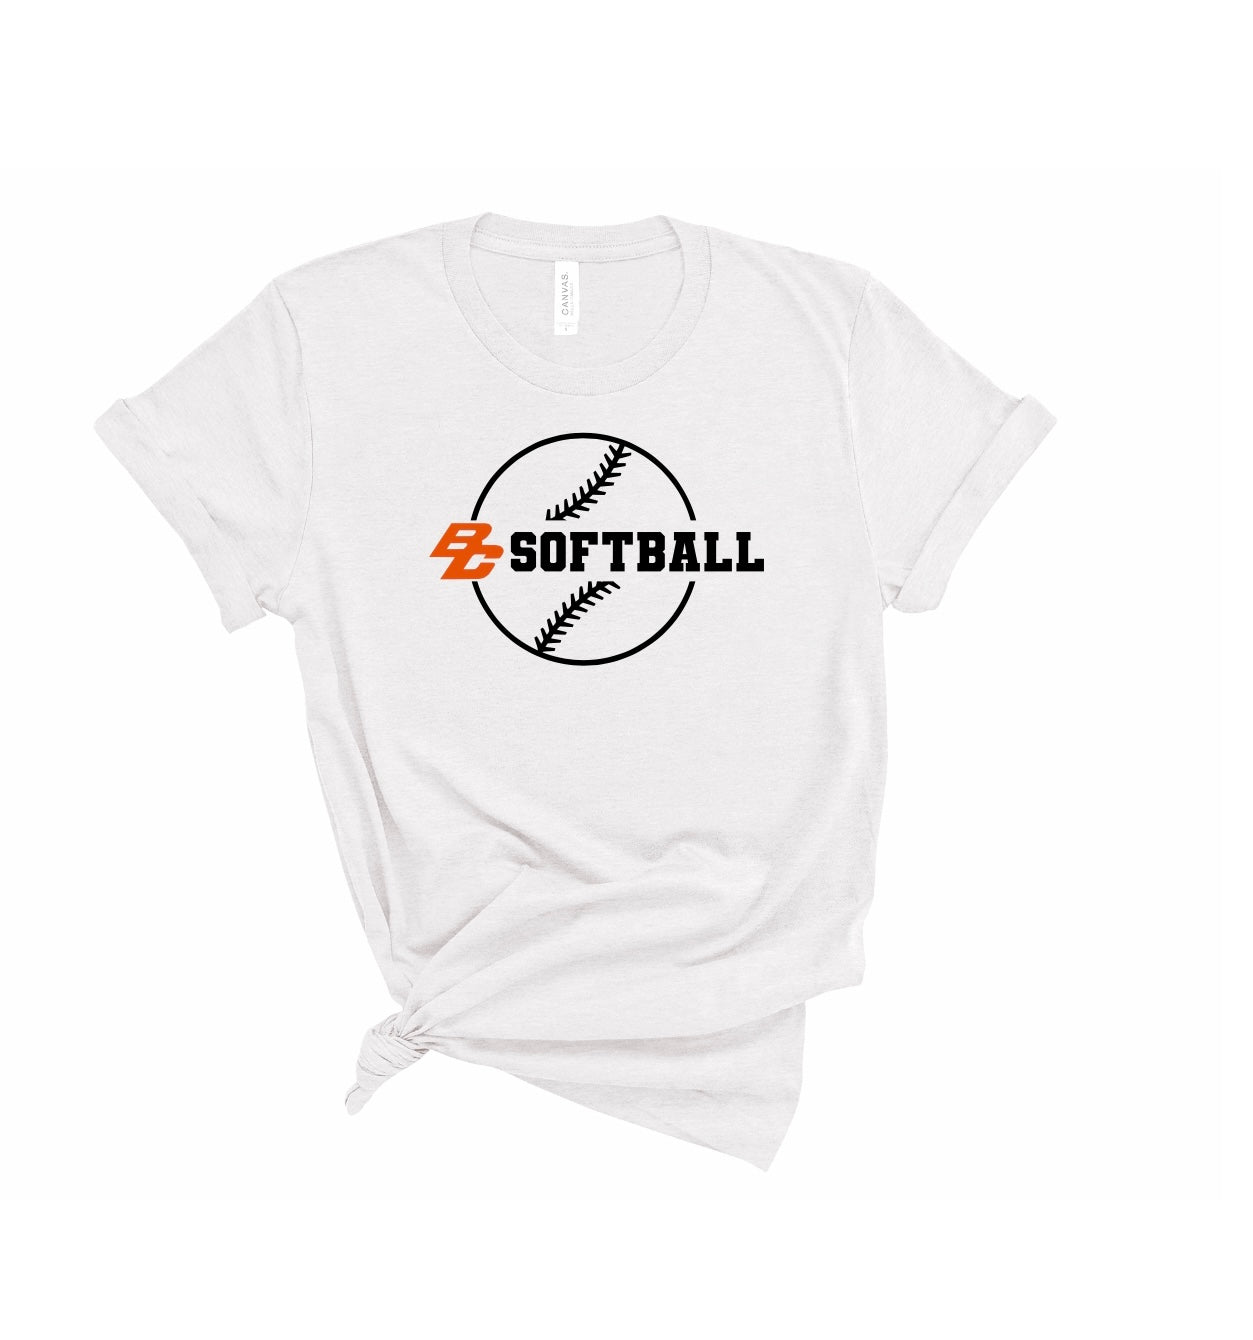 Adult Unisex BC Softball Tees - 2 colors